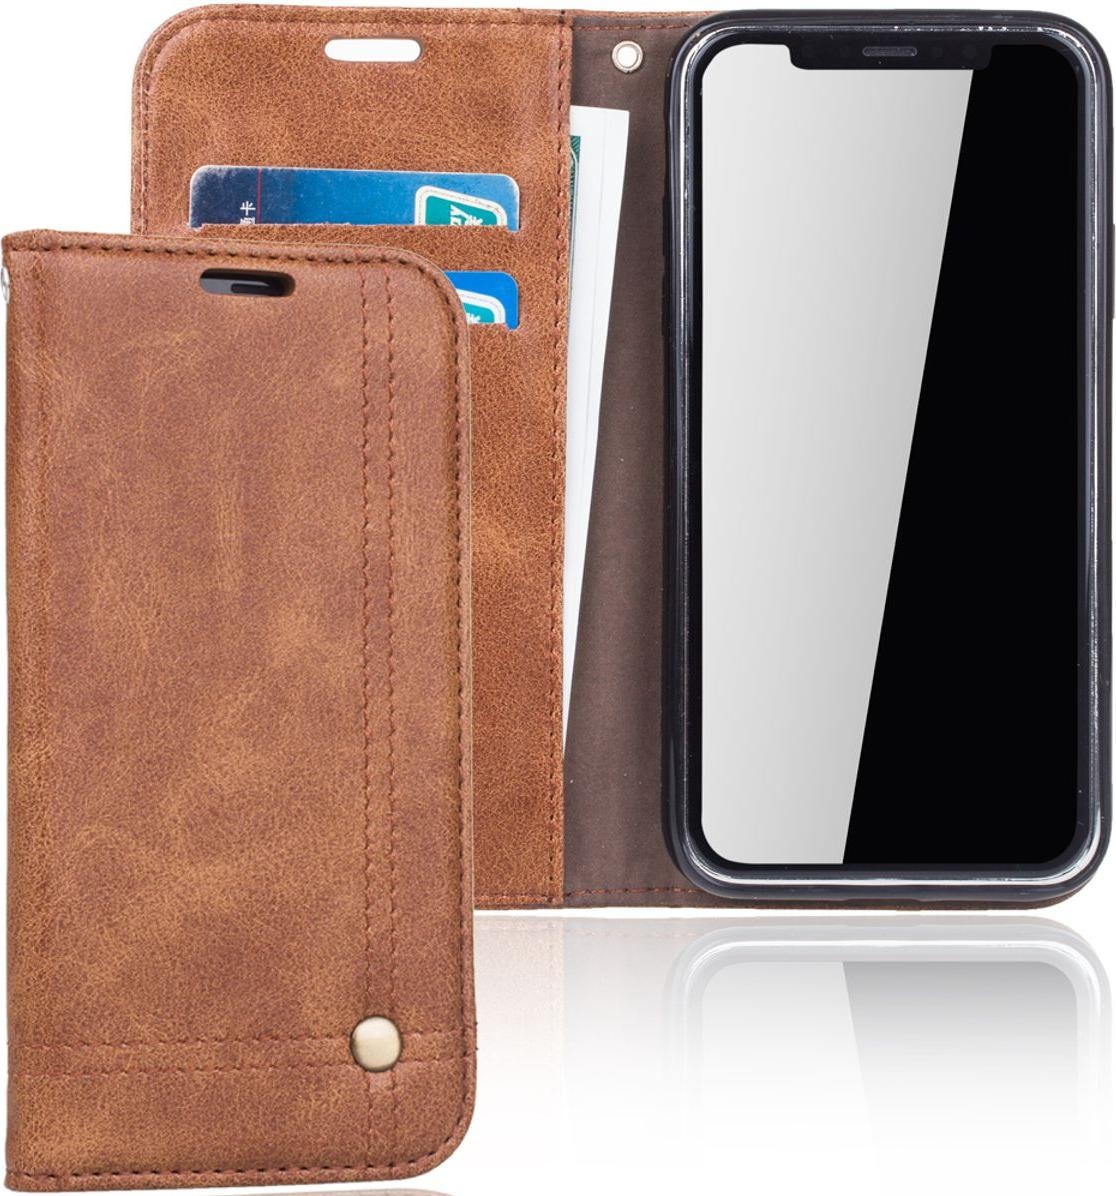 König Design Handy Tasche Apple iPhone X / 10 Flip Cover Case Schutz Hülle Wallet Braun Neu (iPhone X), Smartphone Hülle, Braun